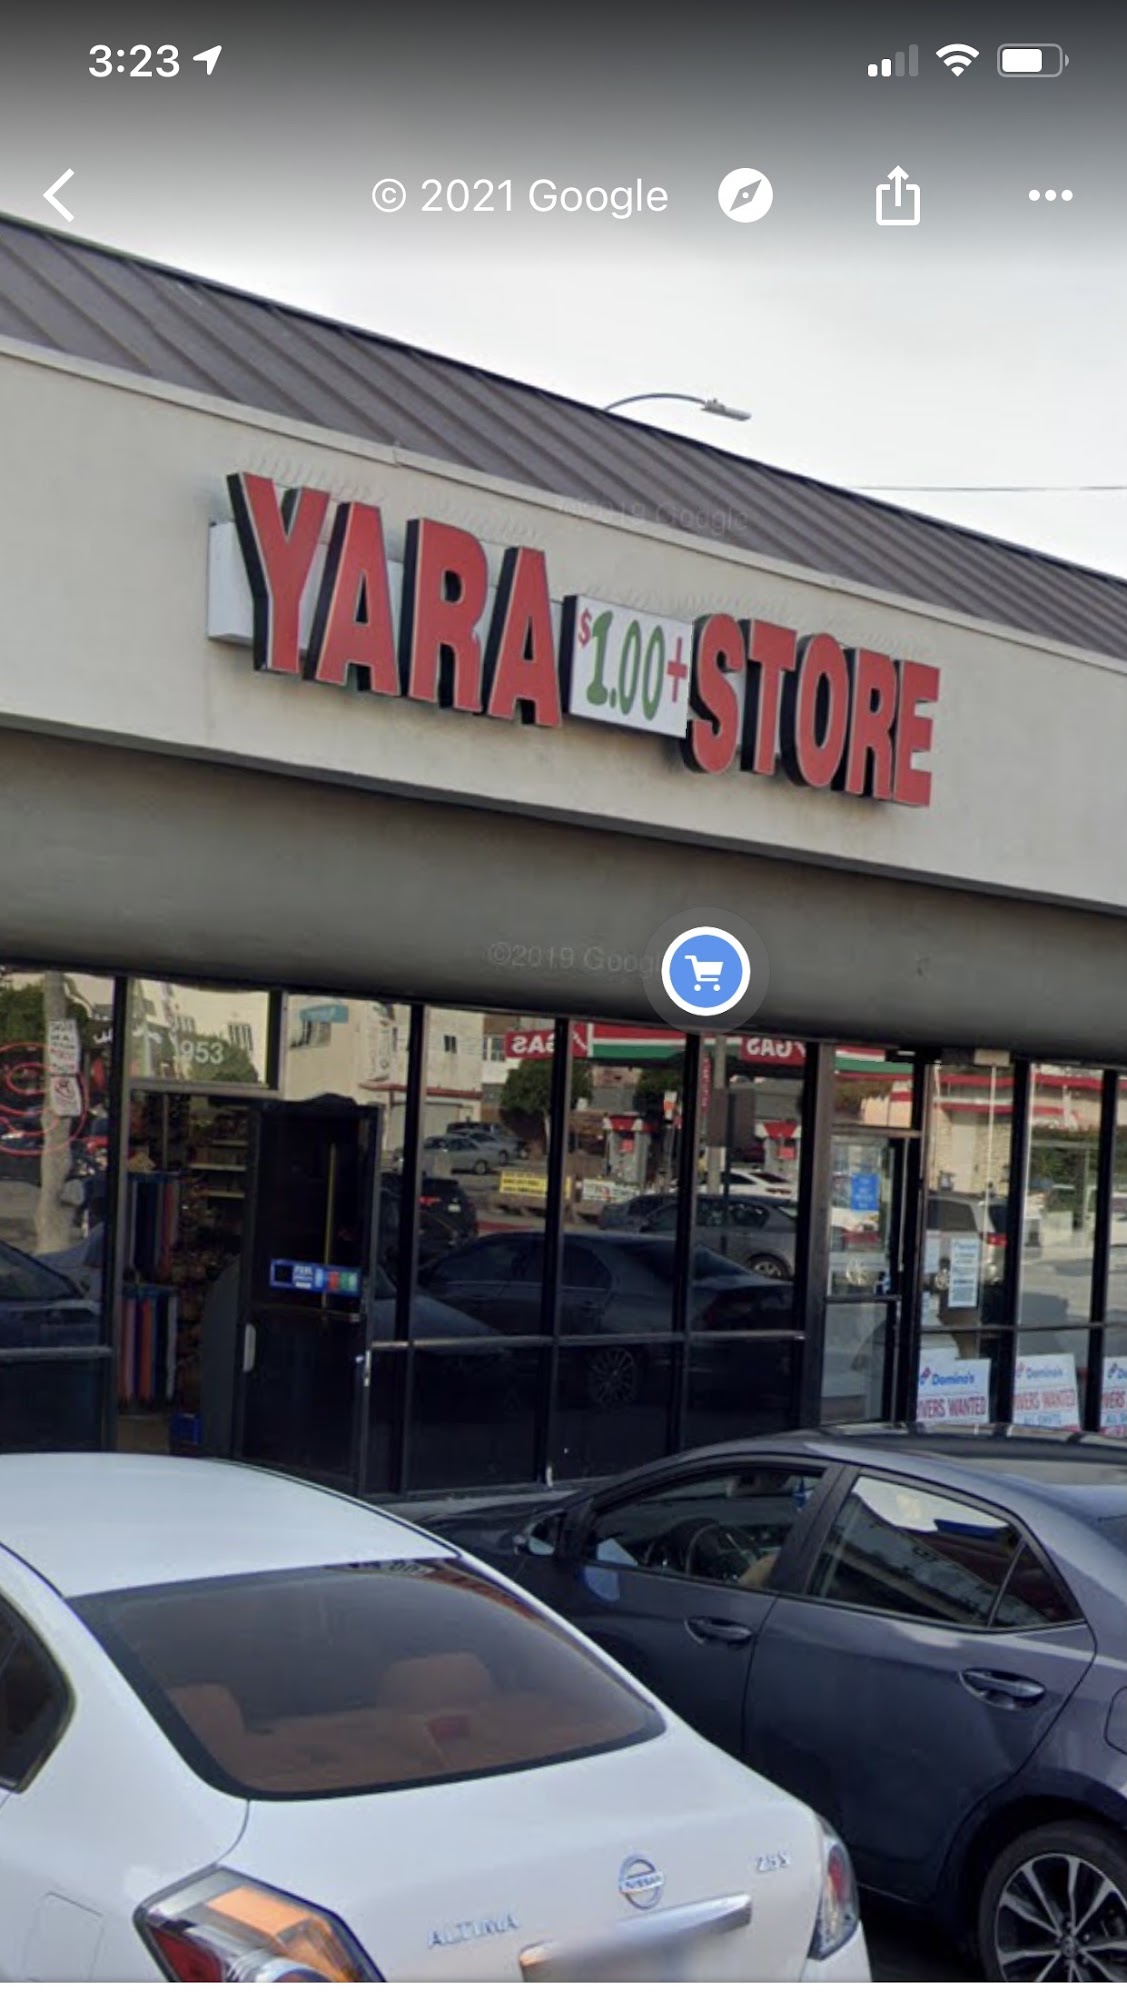 Yarra 1 Dollar Store